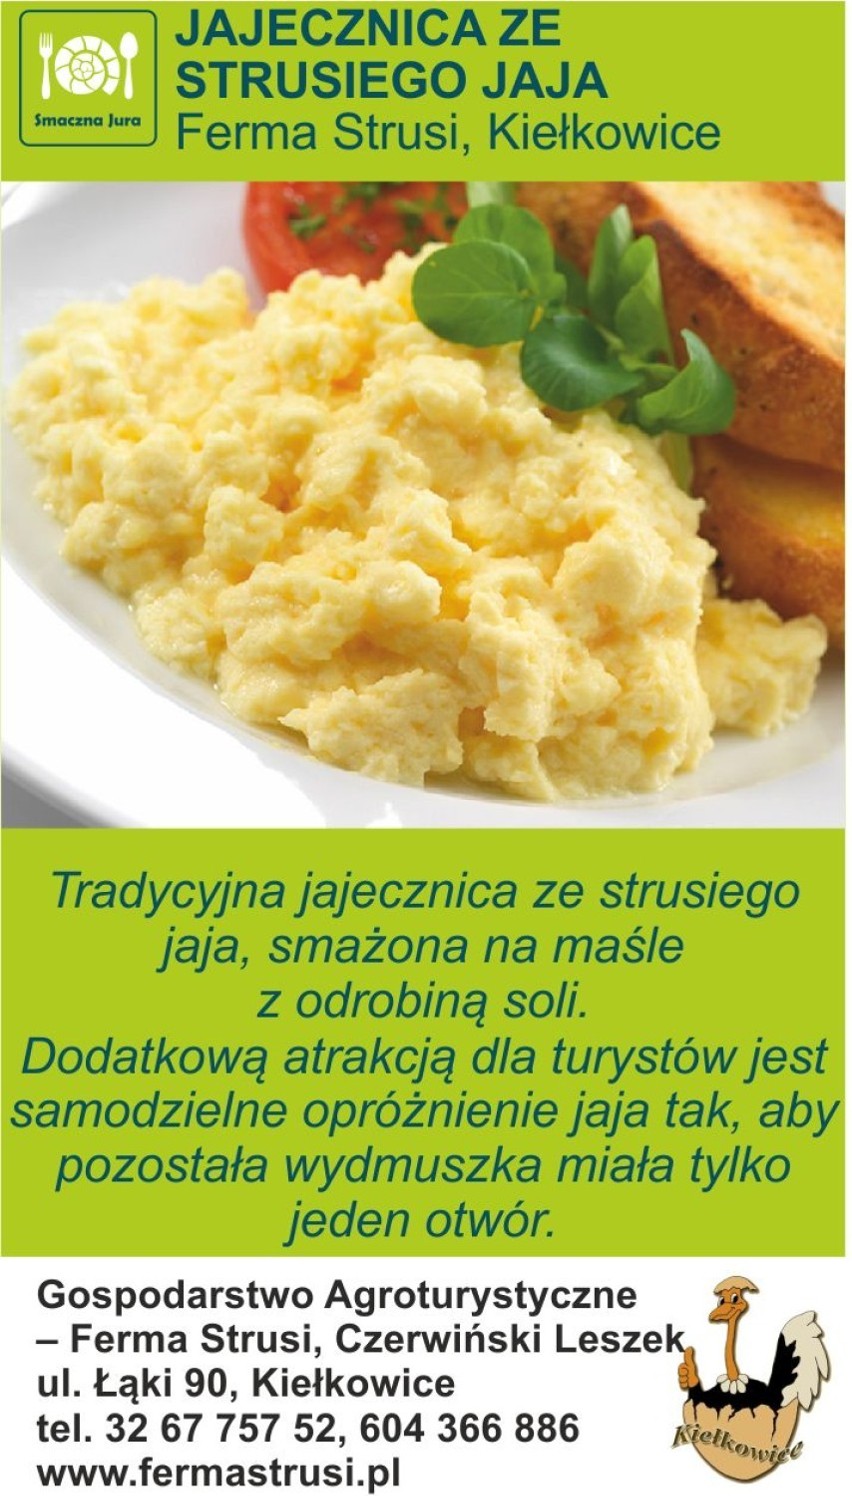 Jajecznica ze strusiego jaja
Ferma strusi, Kiełkowice